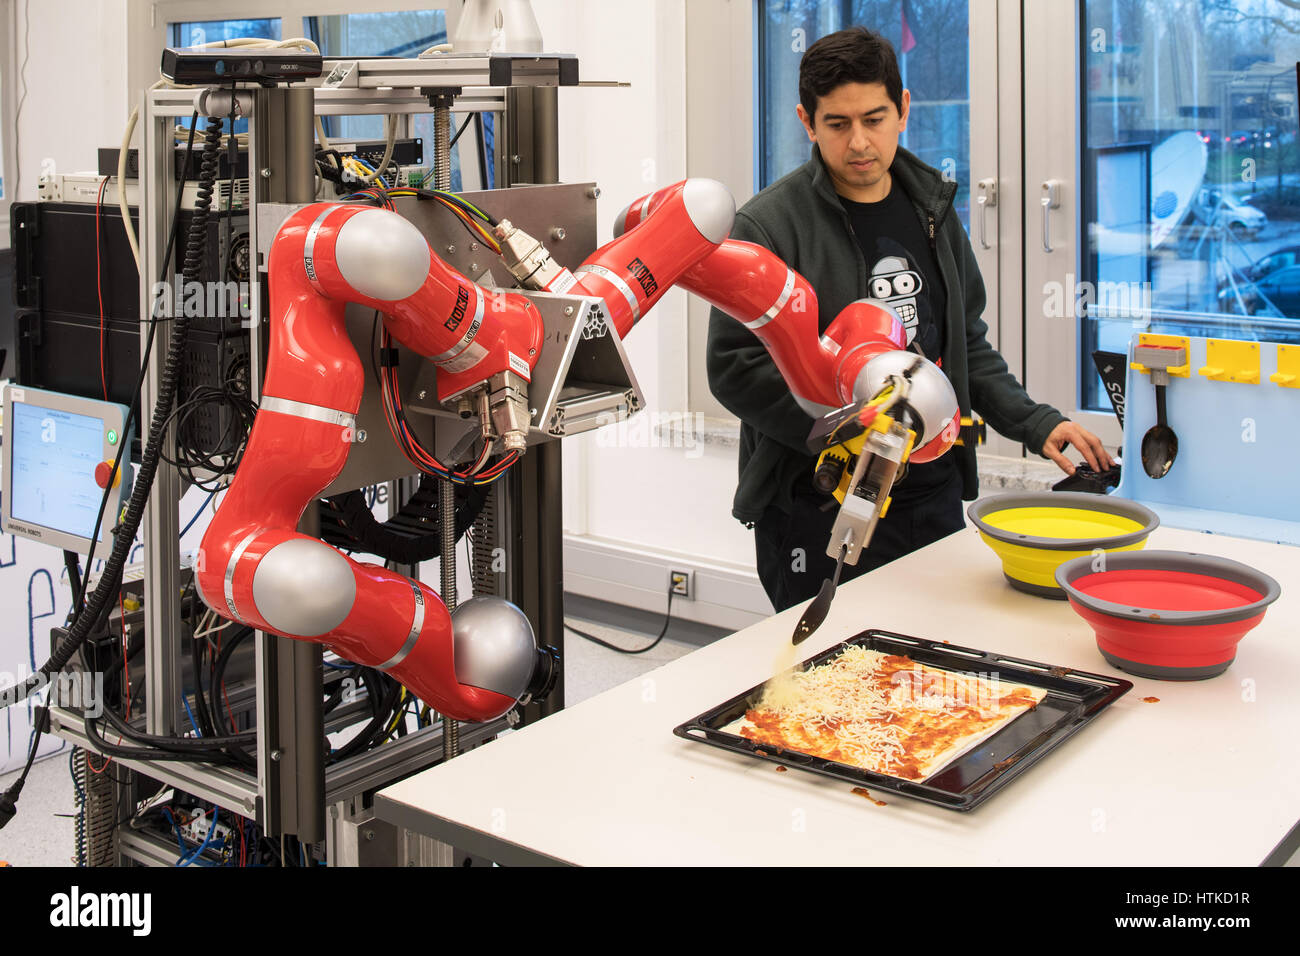 Brême, Allemagne. Mar 8, 2017. Ingénieur développement Alexis Maldonado montres un robot de l'institut de recherche 'l'Intelligence Artificielle (IA)' pizza à l'université de Brême, Allemagne, le 8 mars 2017. Les scientifiques de l'ordinateur et le robot en ce moment tenter de modifier et programmer des robots afin de les aider dans la cuisine, entre autres. Photo : Ingo Wagner/dpa/Alamy Live News Banque D'Images